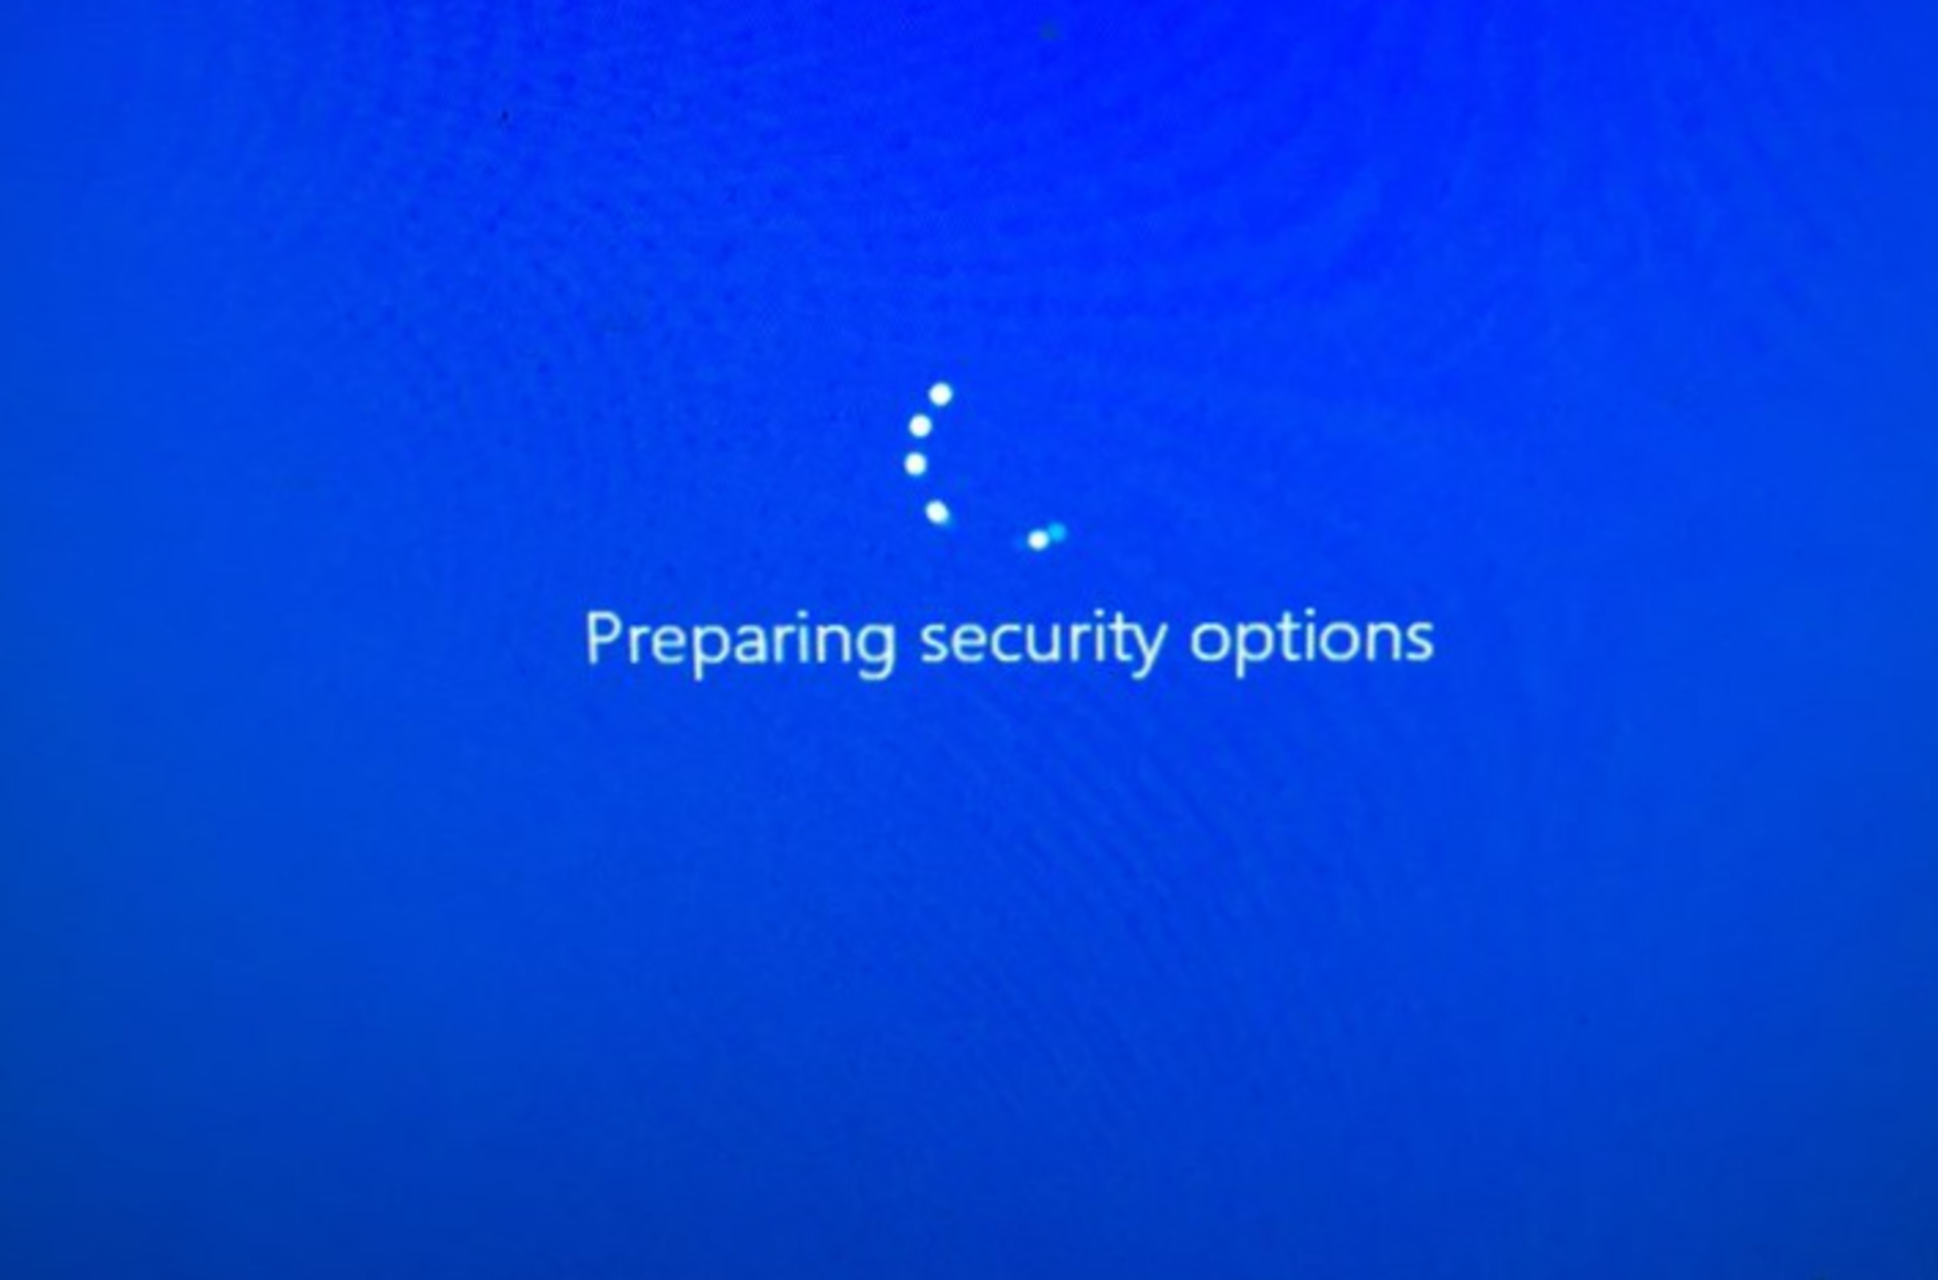 fix Preparing security options error in Windows